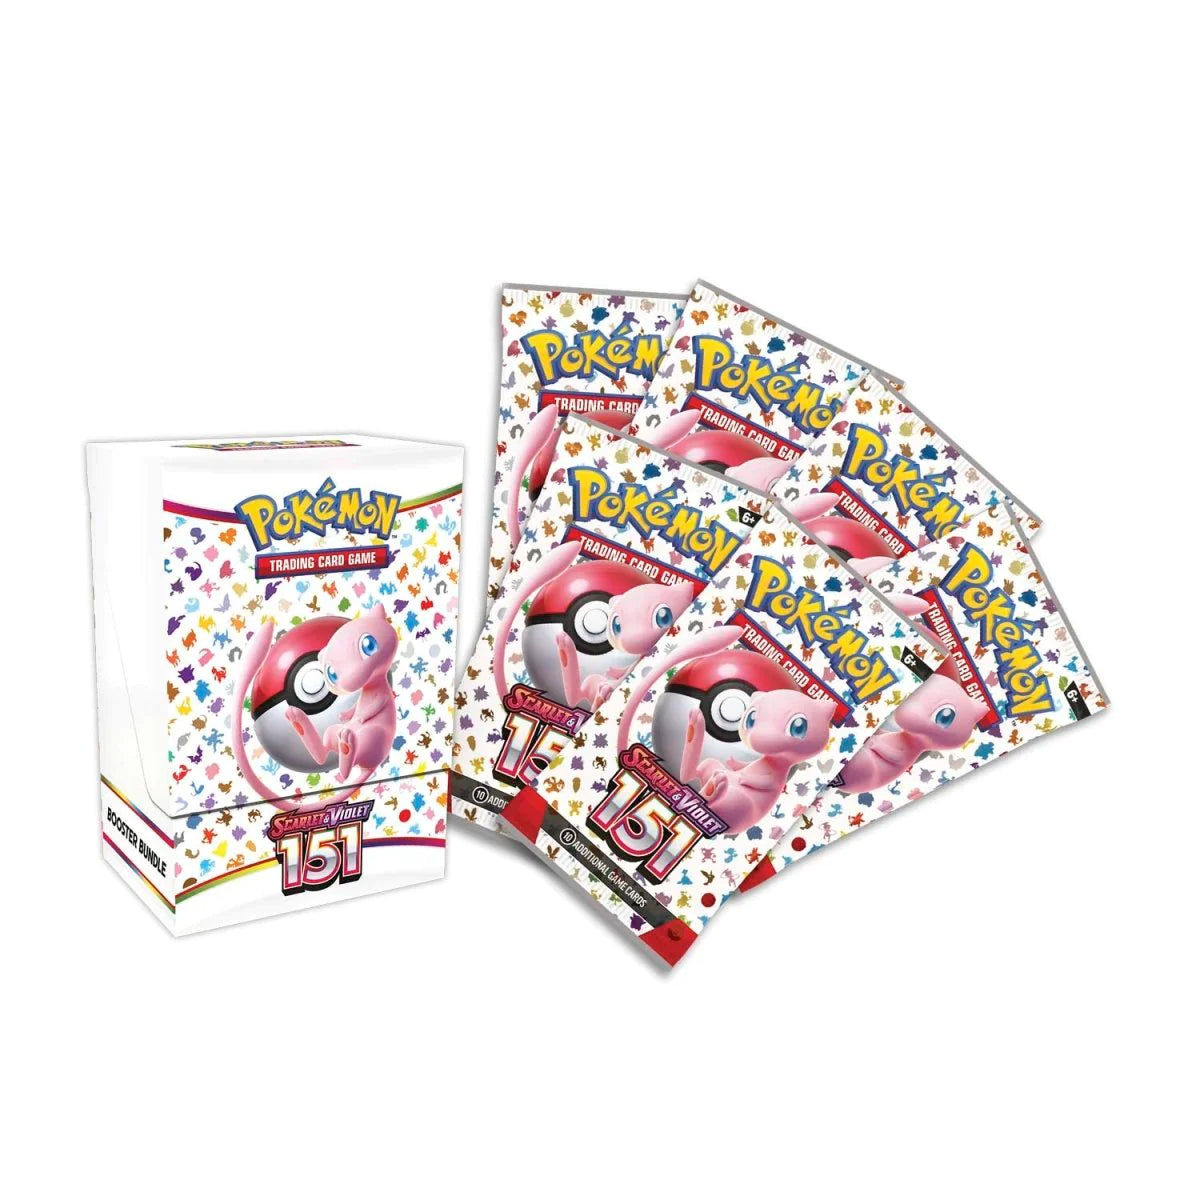 Pokemon Trading Card Game: Scarlet & Violet 151 - Booster Bundle Preorder